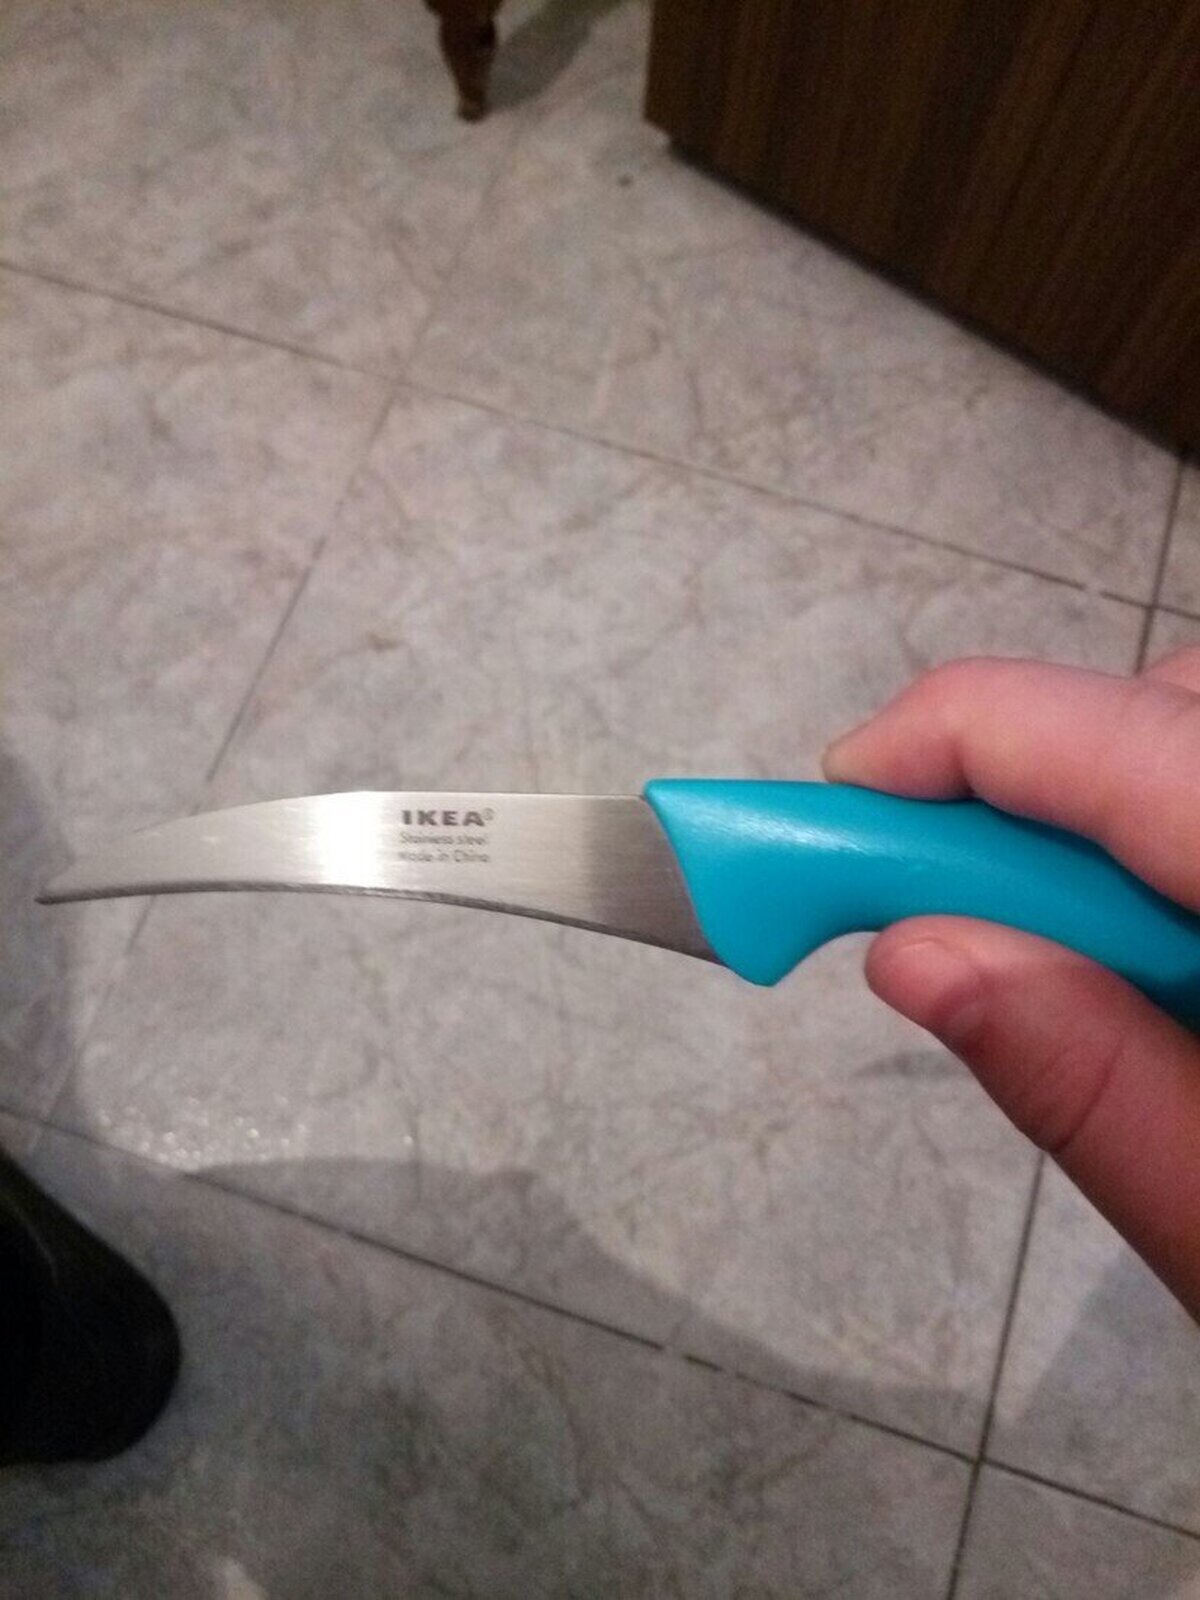 Ikea se ha pasado a hacer cuchillos del cs:go